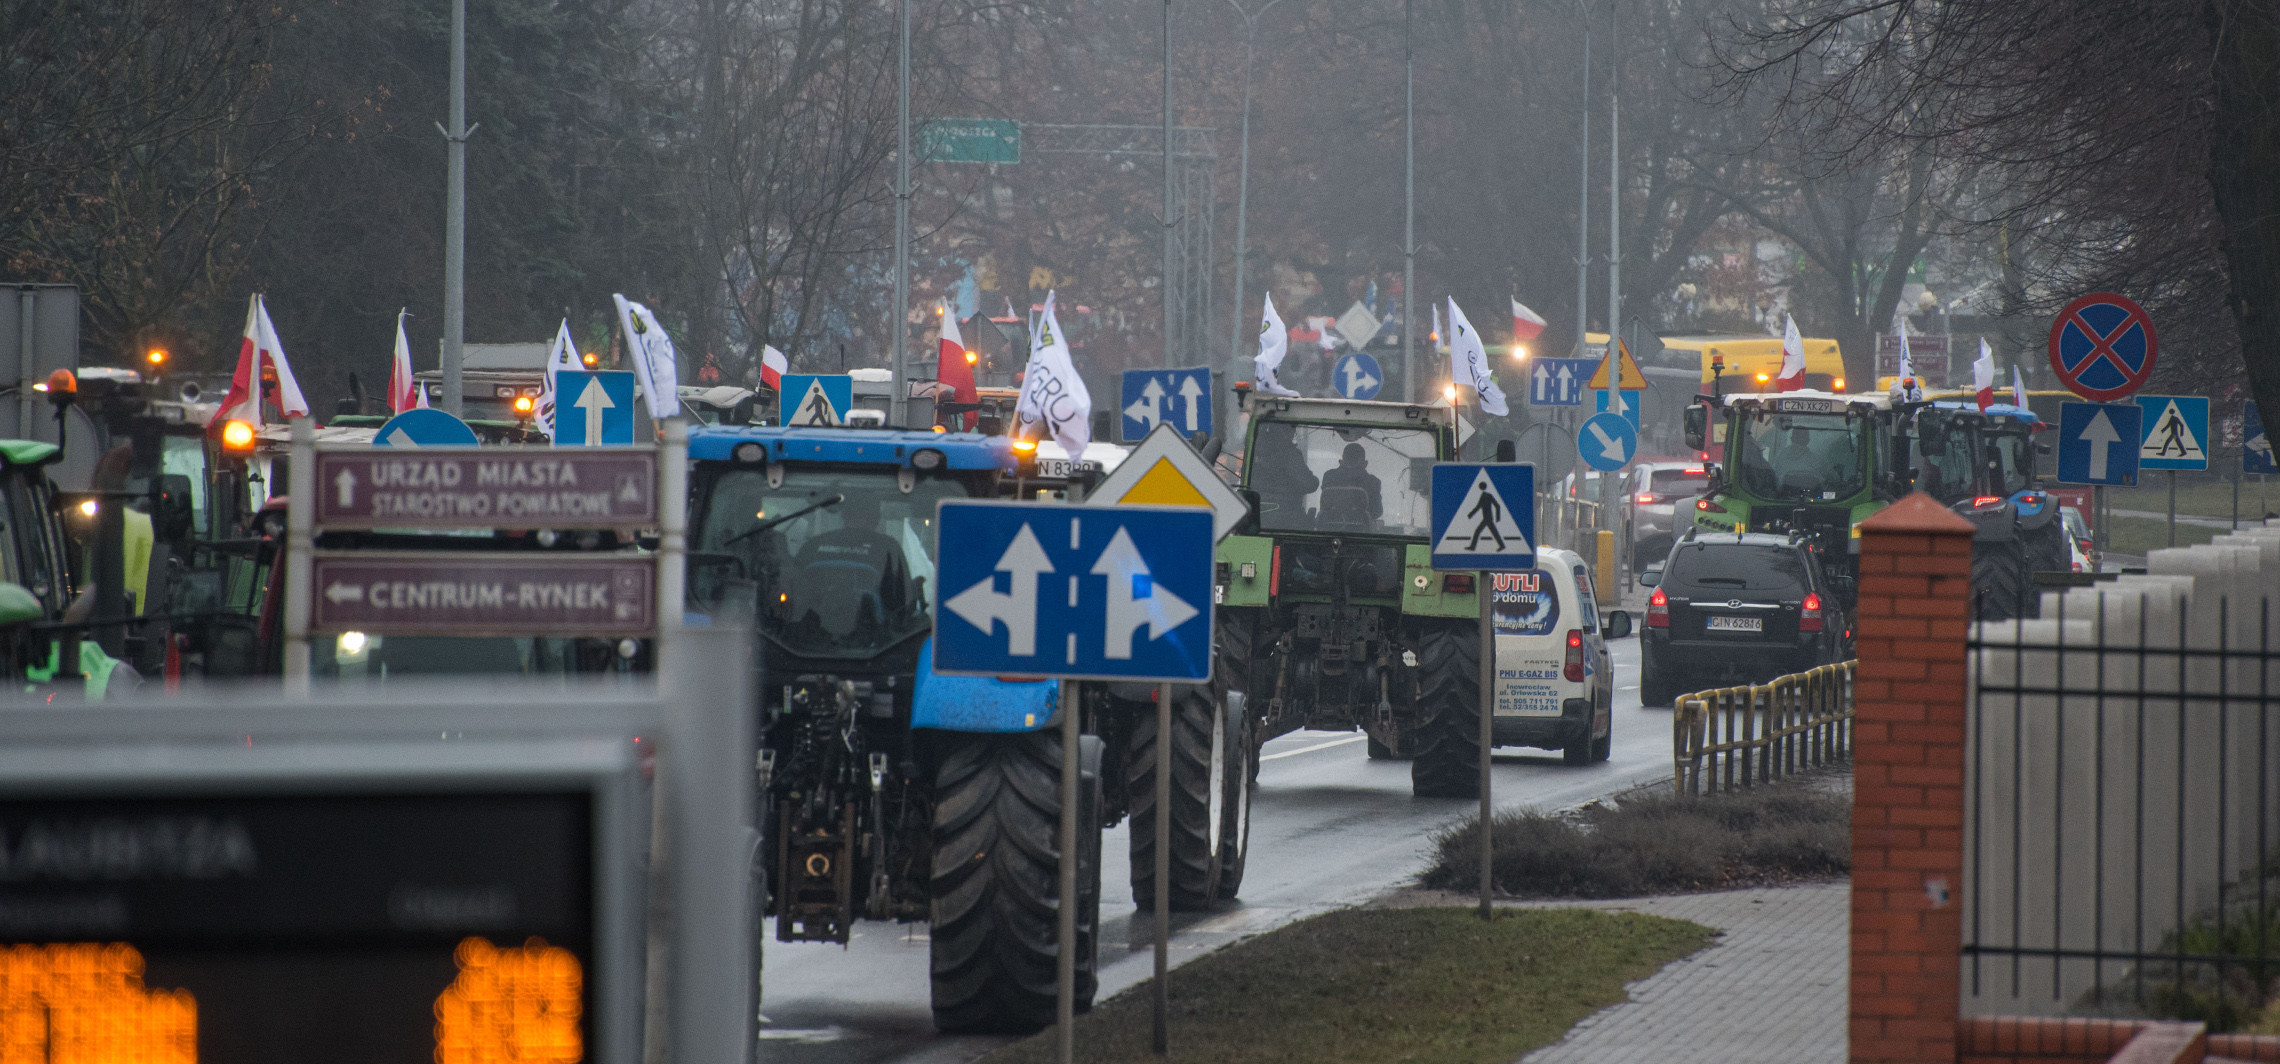 Inowrocław - Protest rolników Agrounii. Ciągniki blokowały drogi